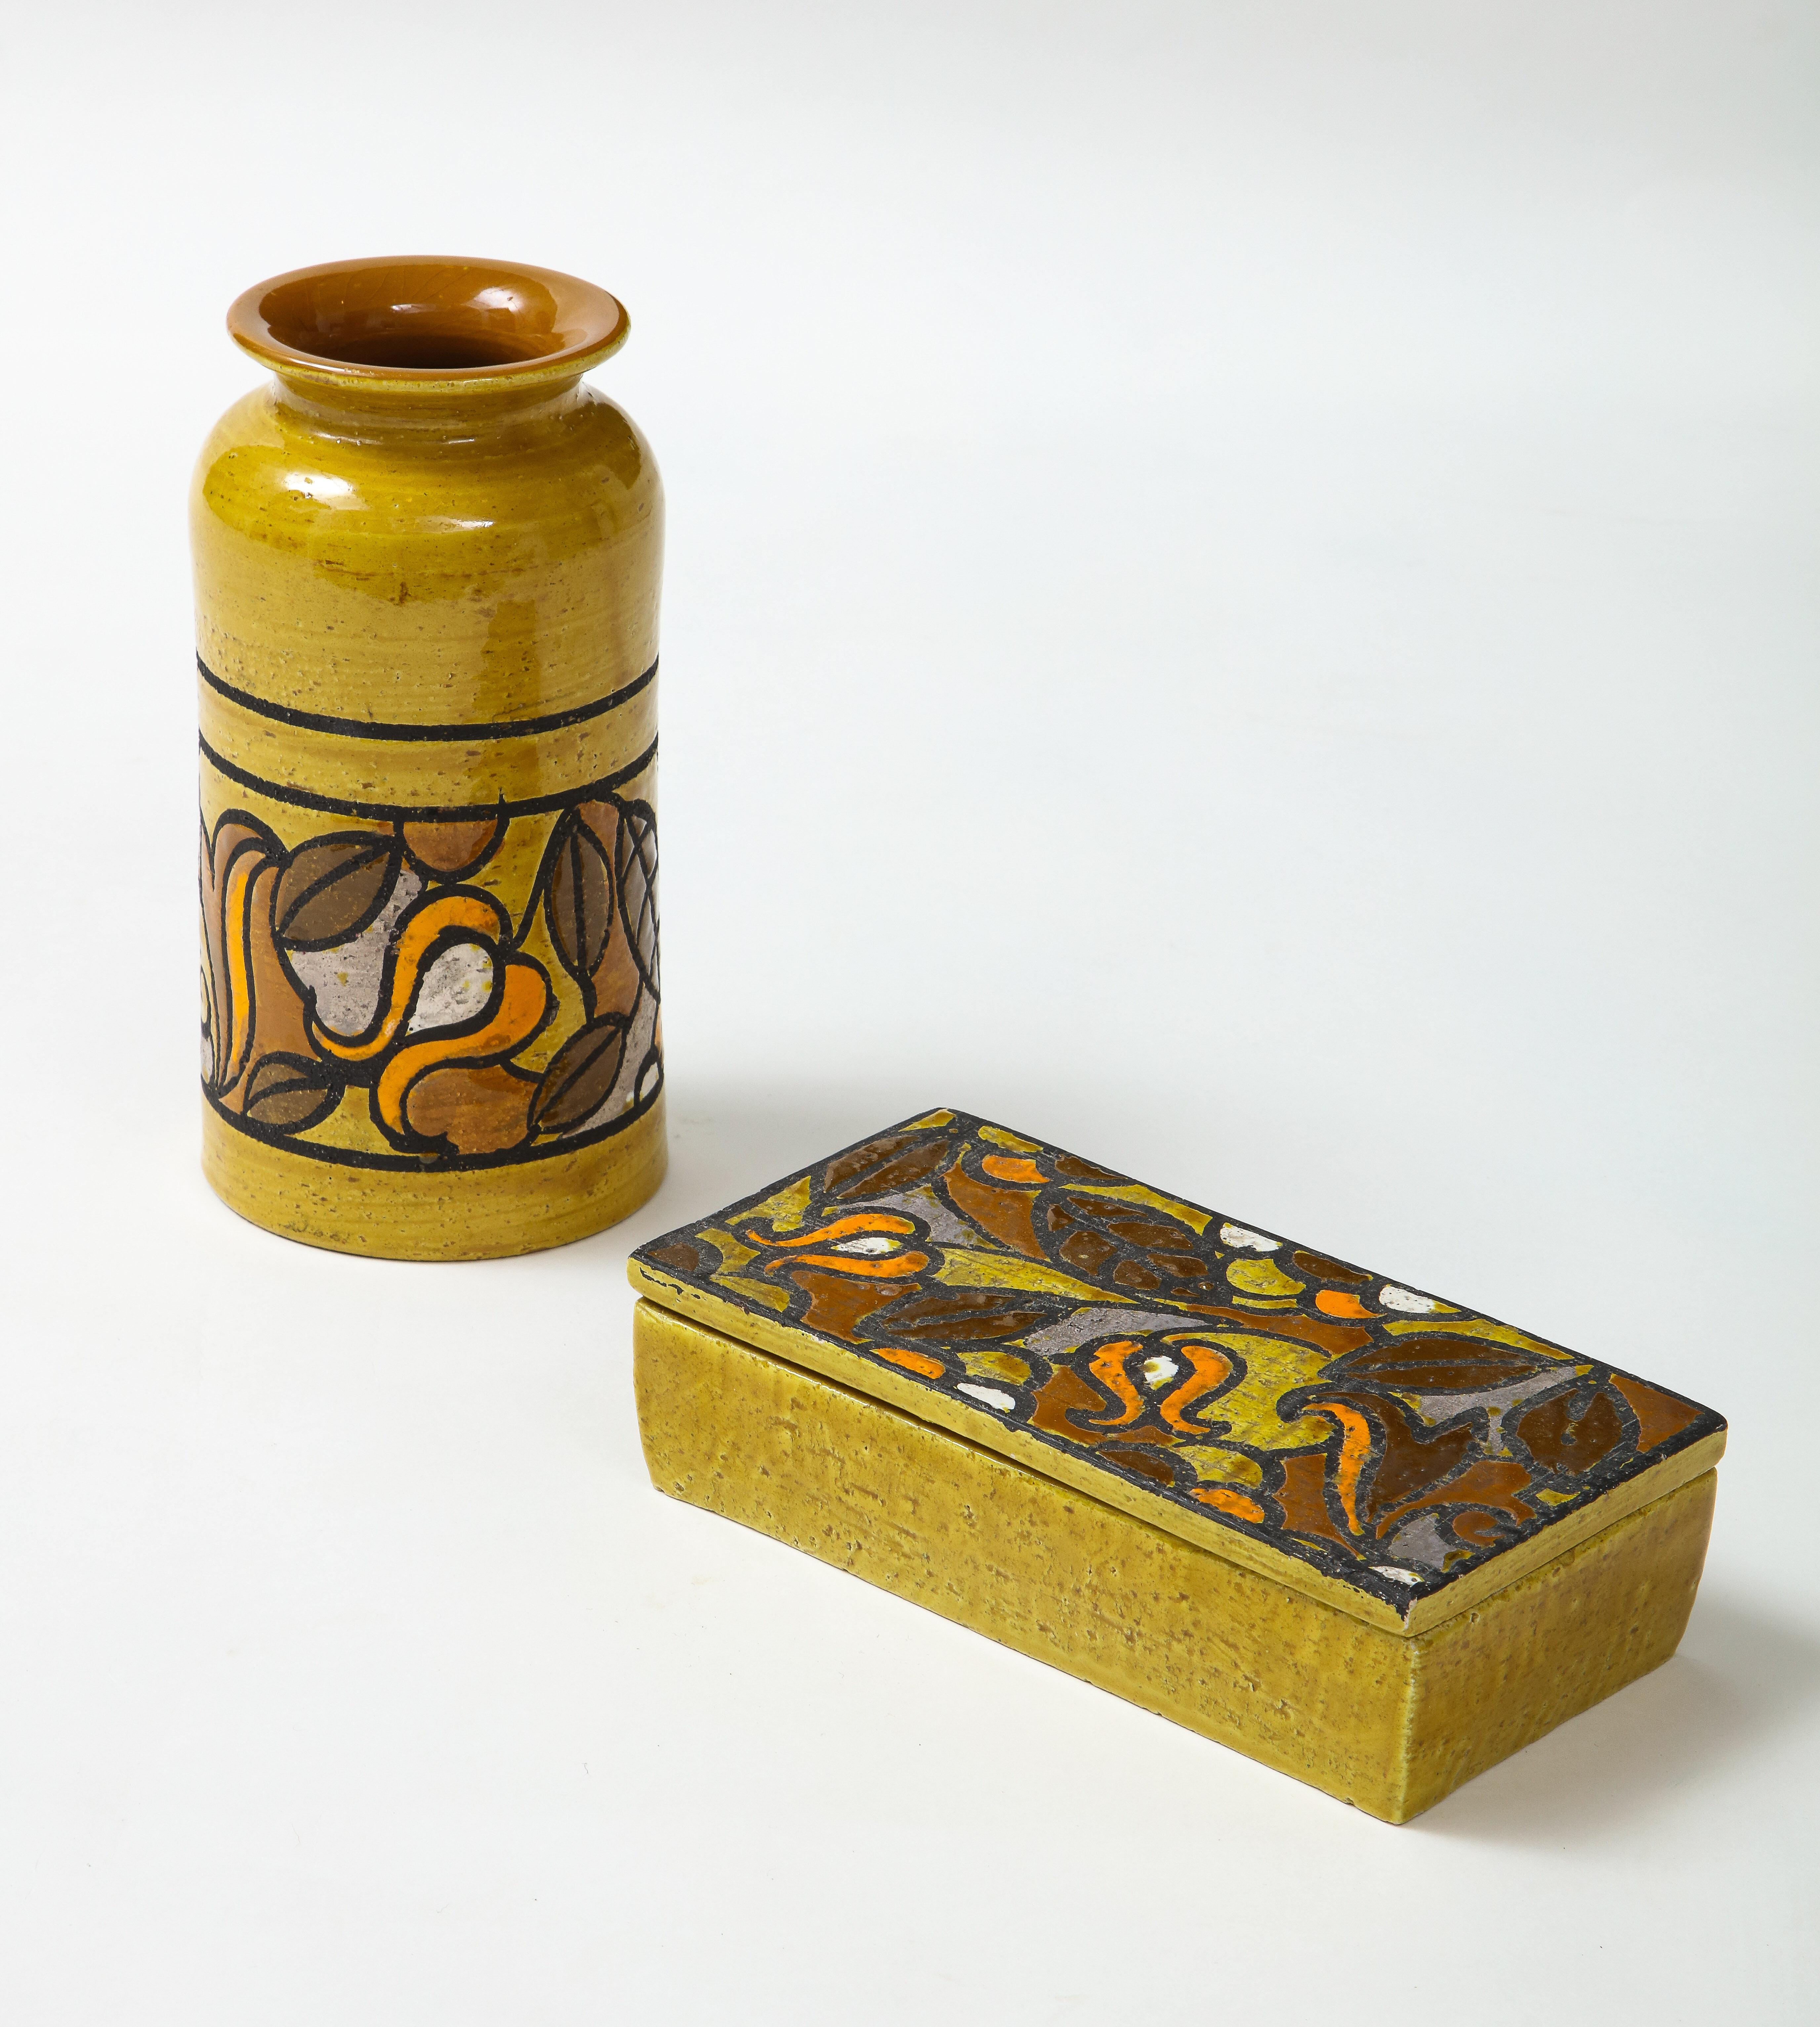 Aldo Londi für Bitossi handdekorierte Vase und Schachtel. Ein ockerfarbener Grund bildet den Hintergrund für das bunte, stilisierte Blumenmotiv. Signiert/Etikettiert Verkauft als Set.

Vase misst 8 x 4,25 
Die Schachtel misst 8 x 4 x 2.